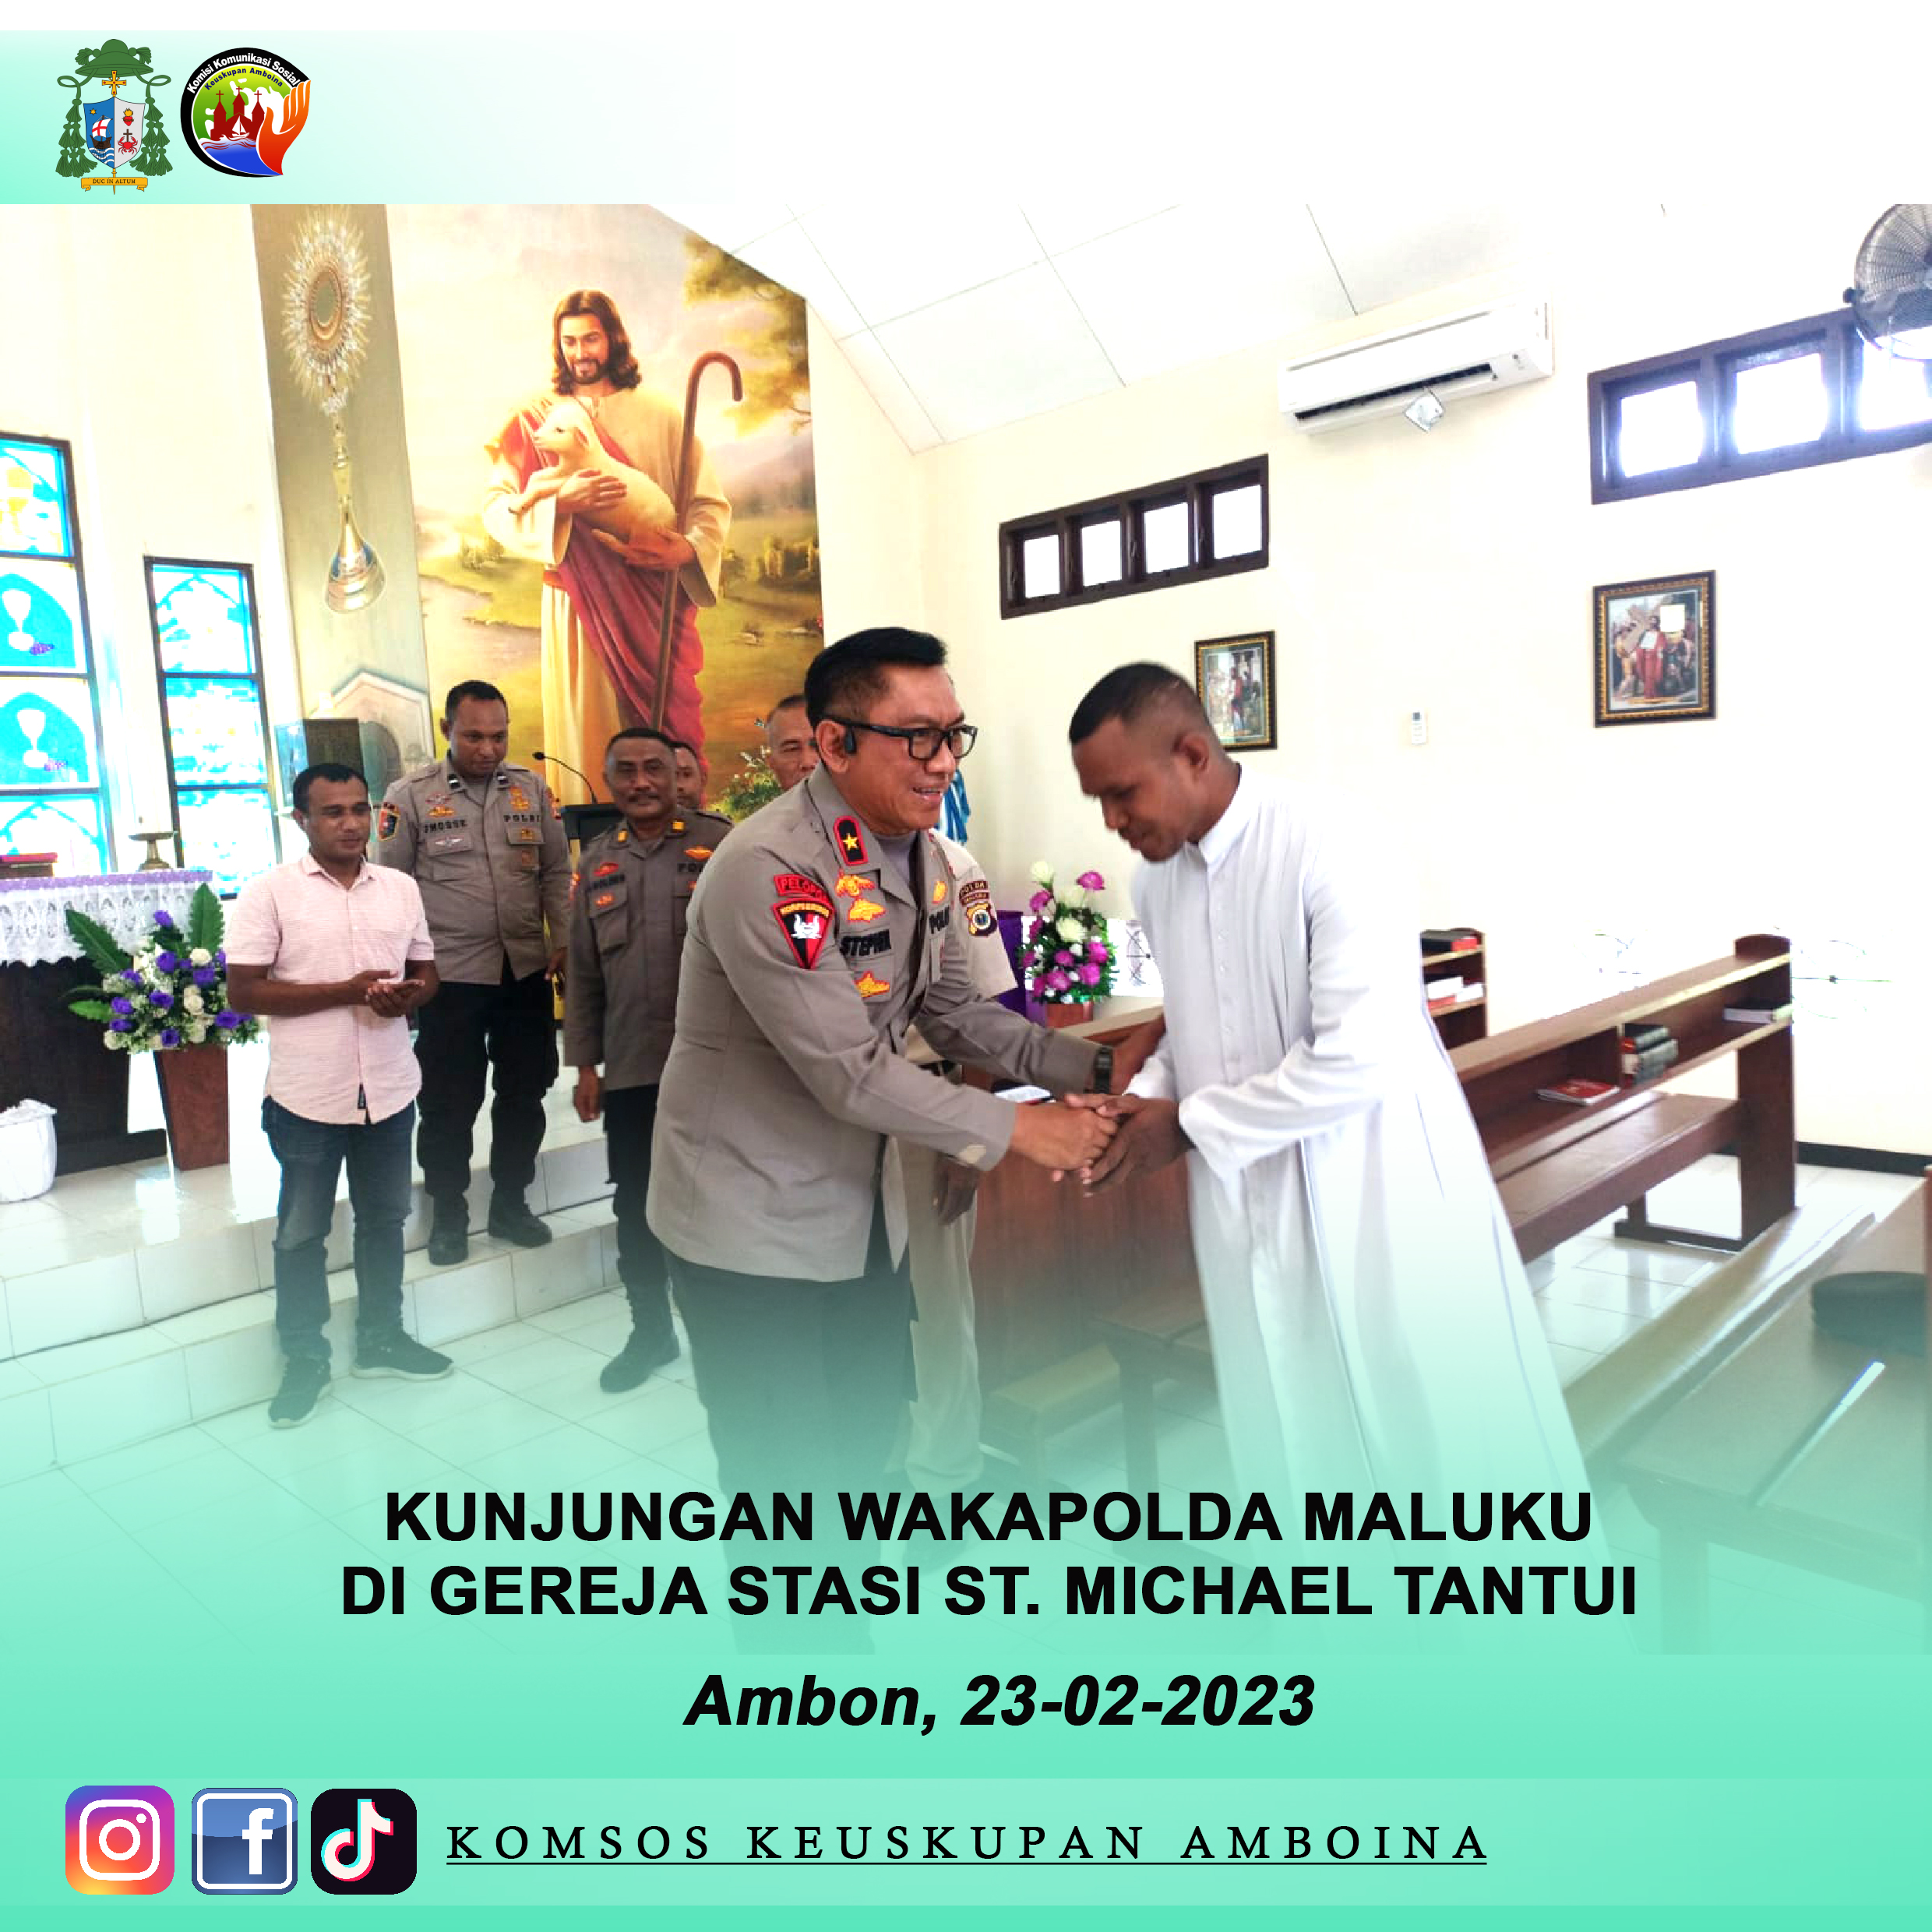 Kunjungan Wakapolda Maluku Pada Hari Kamis, 23-02-2023Di Gereja Stasi St. Michael Tantui